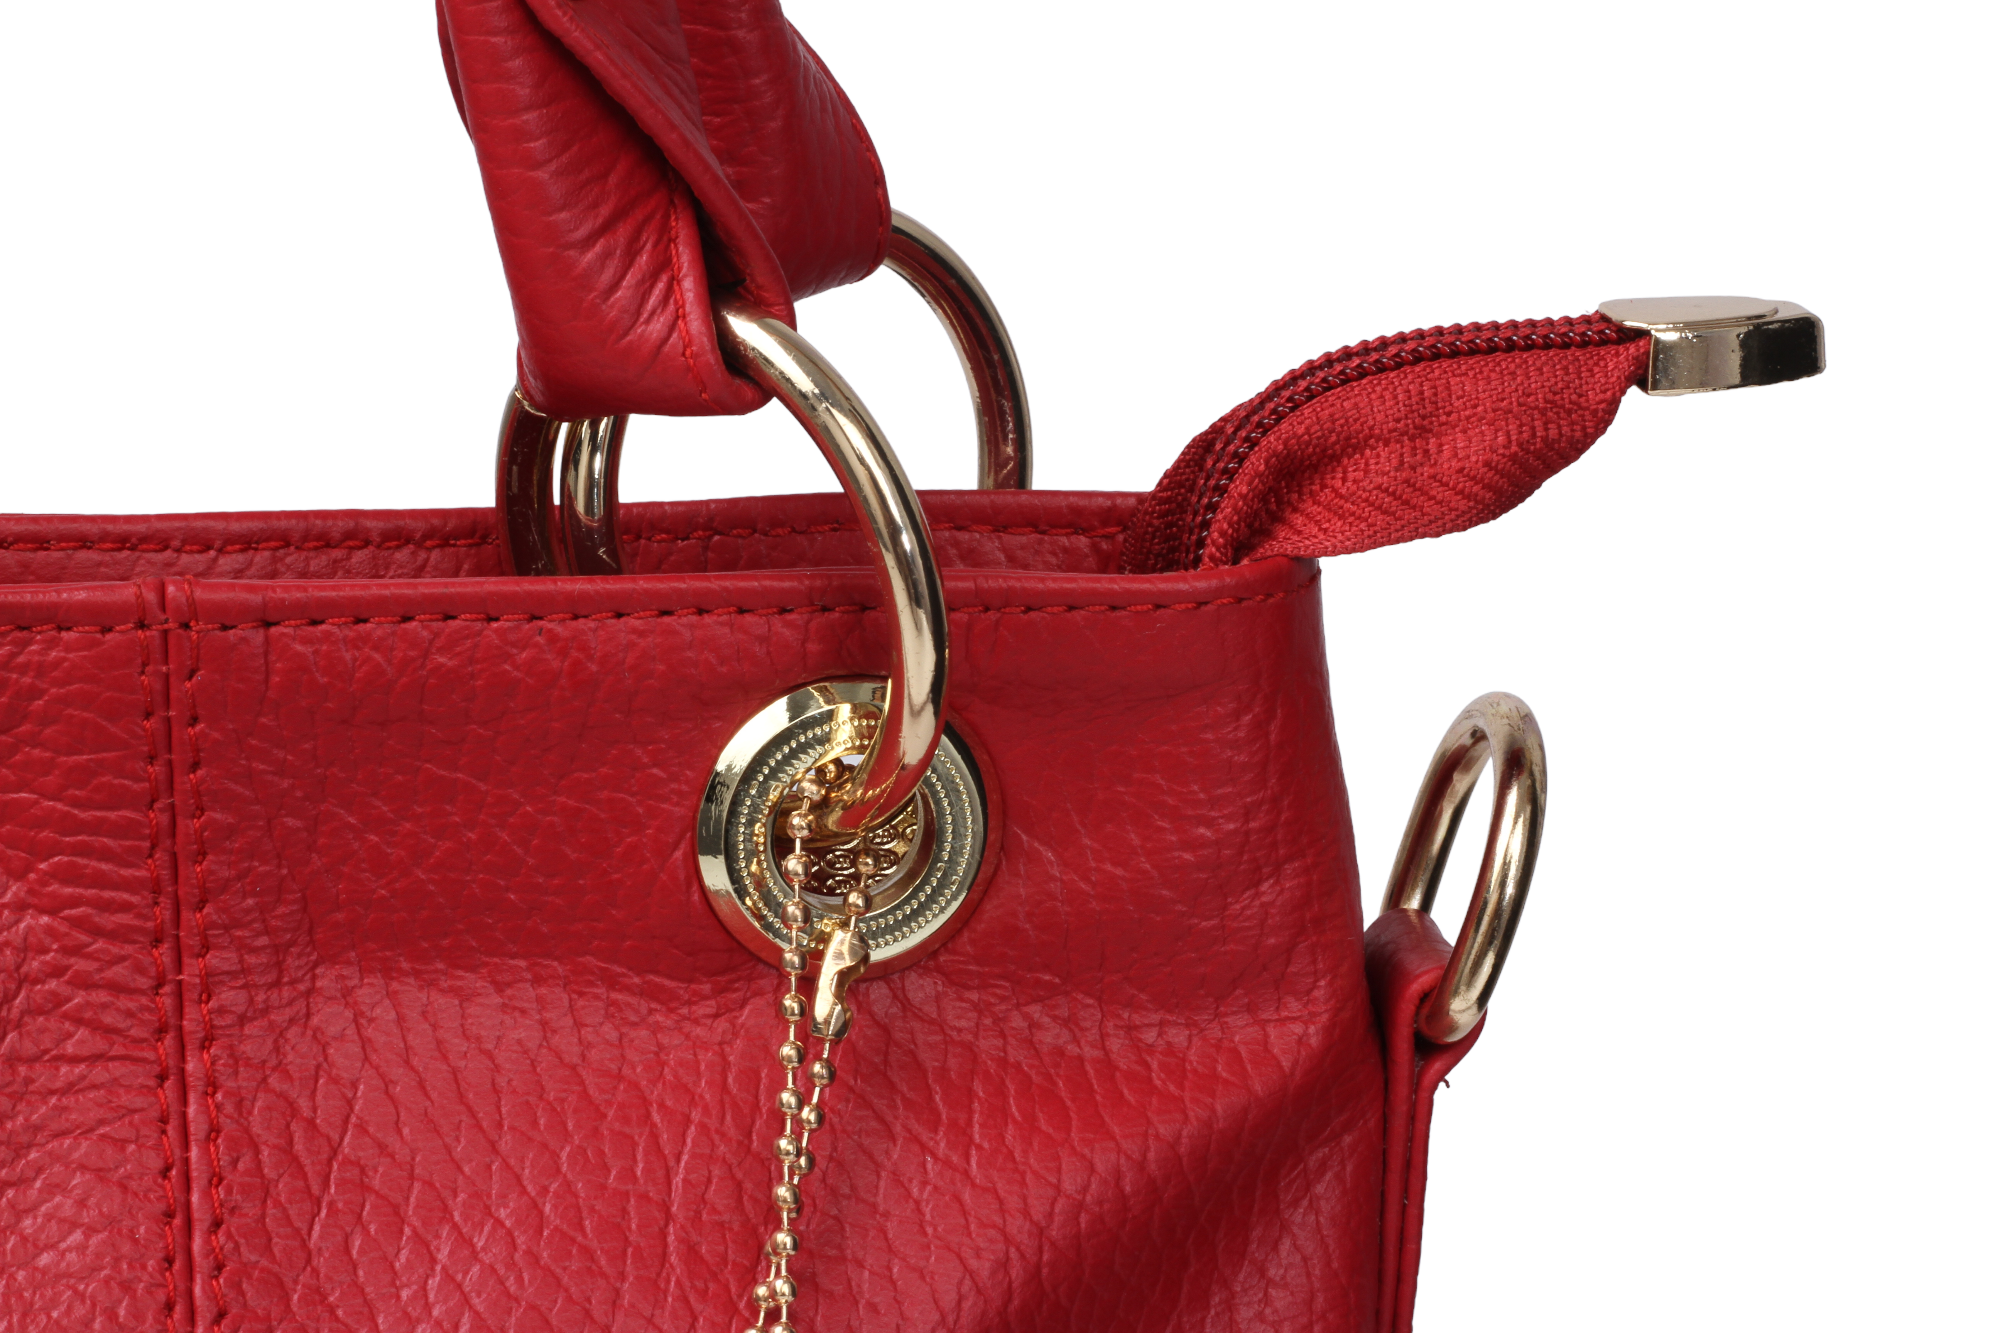 12728 Ladies Hand Bag – Sreeleathers Ltd